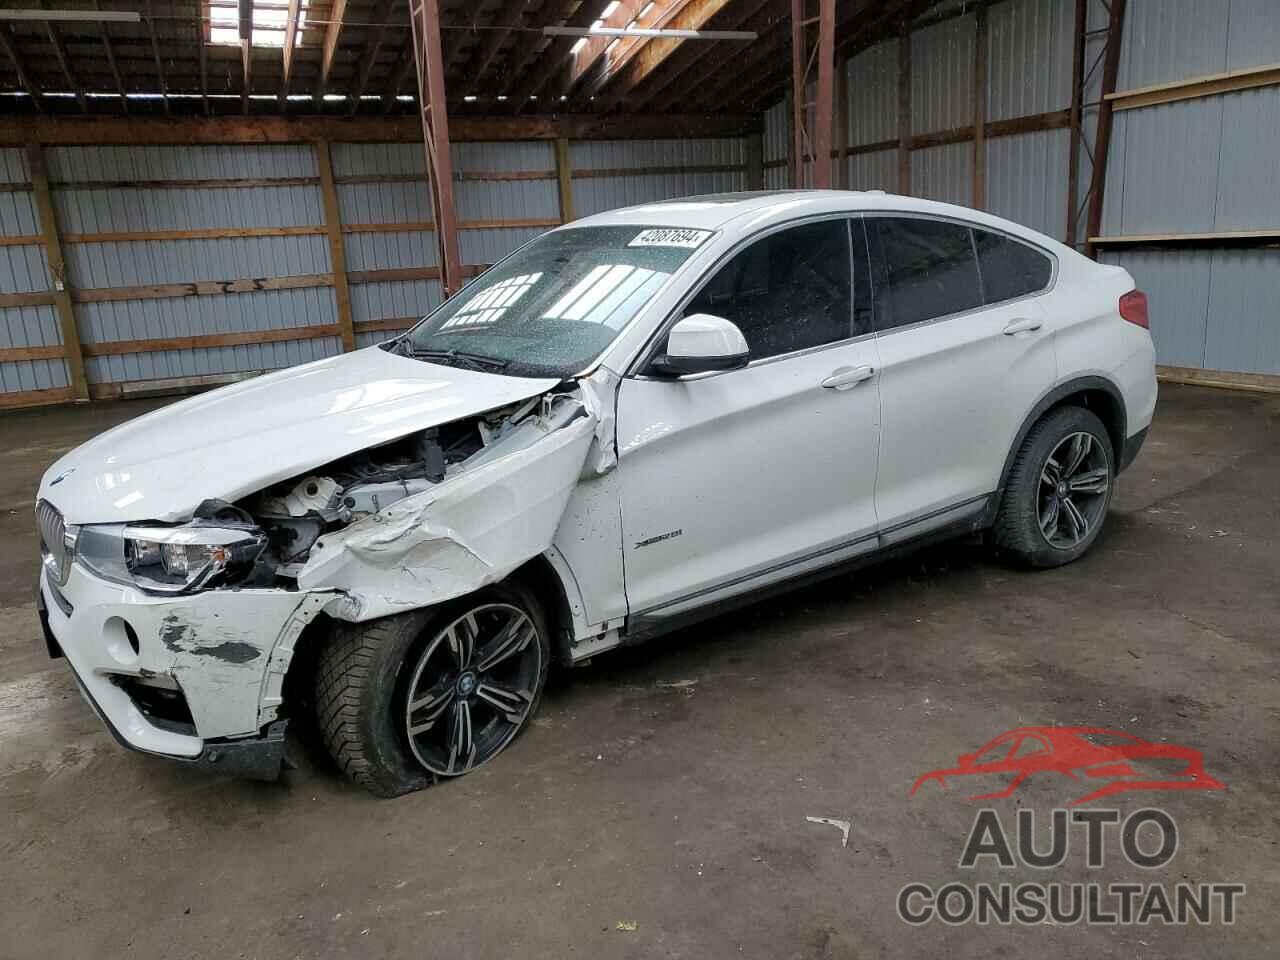 BMW X4 2016 - 5UXXW3C54G0M89548